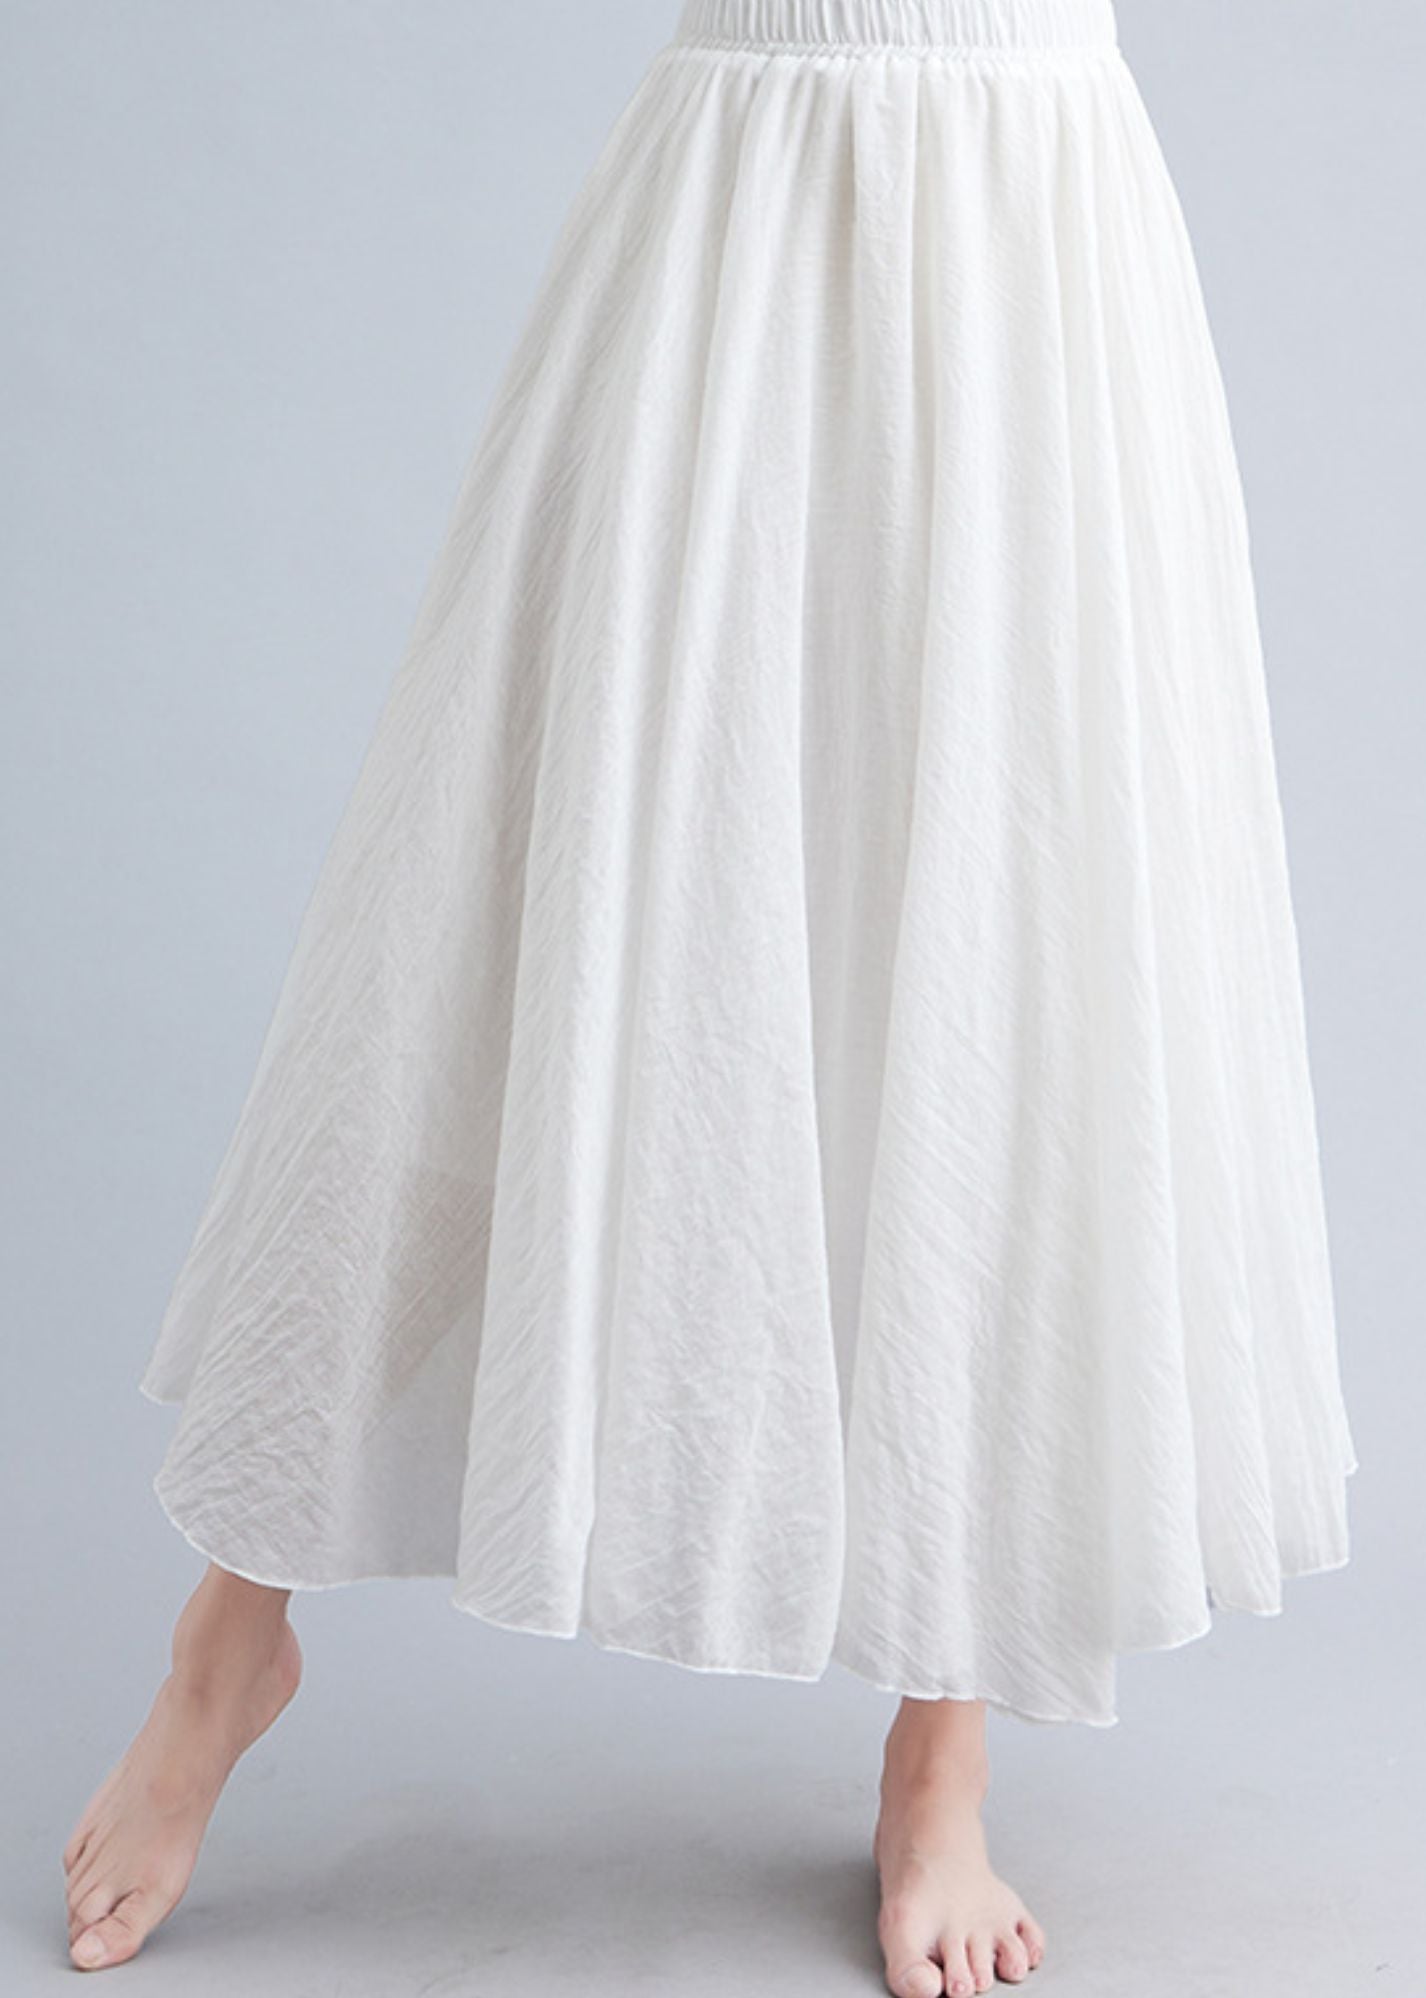 Women's Big Hem Artistic Cotton Linen Skirt